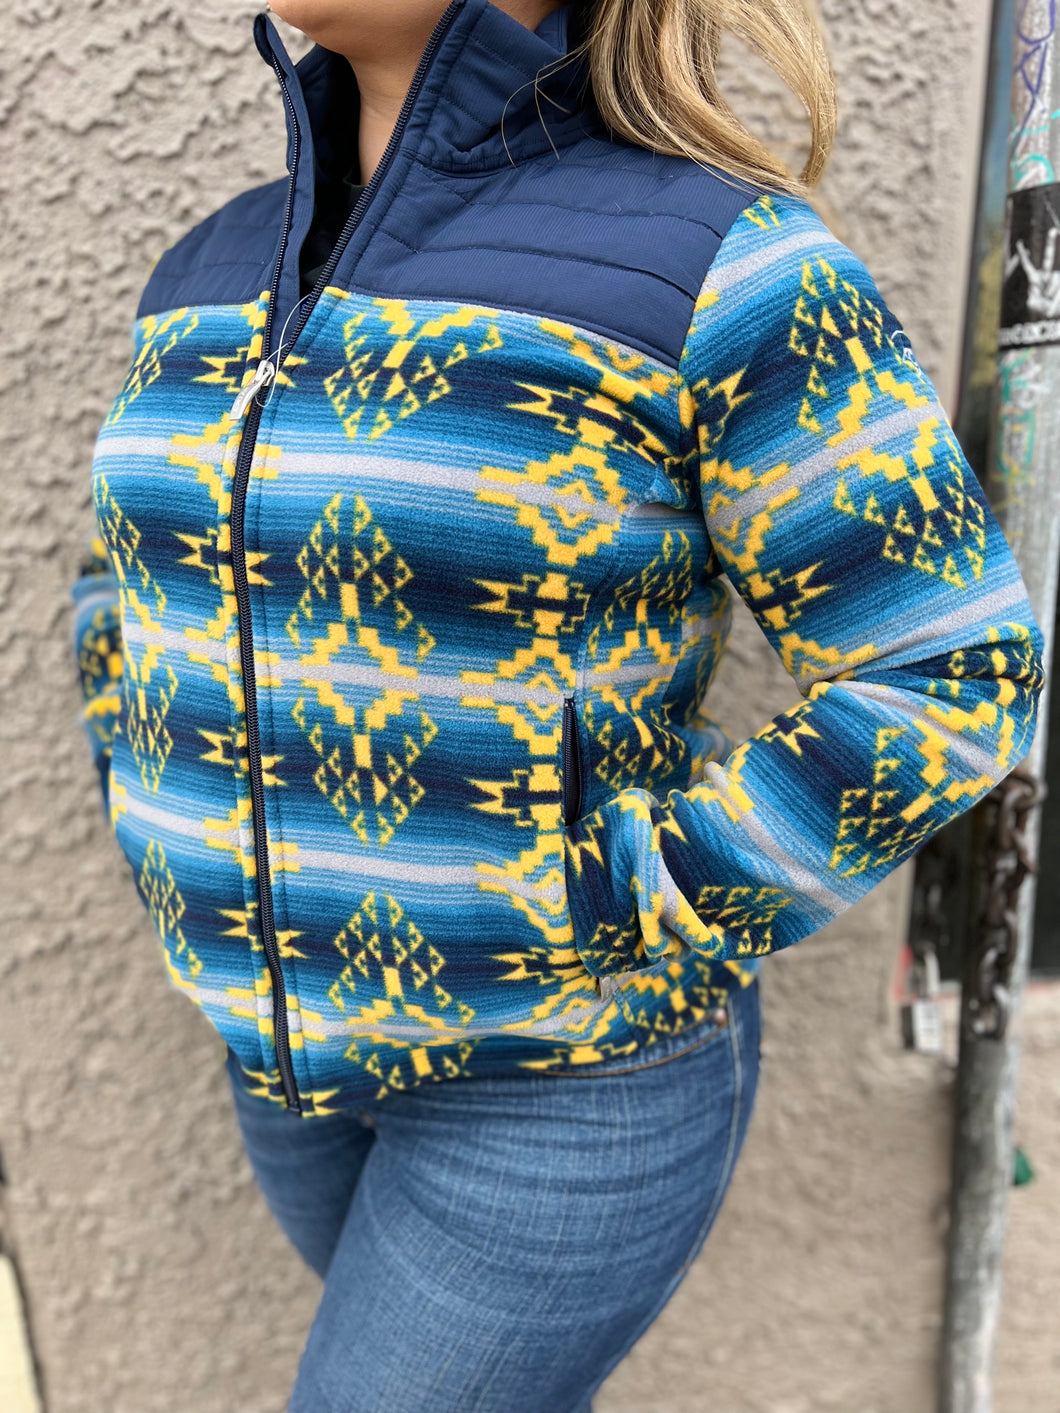 WOMEN'S Ariat Real Prescott Fleece Jacket in Navy Sonoran Print